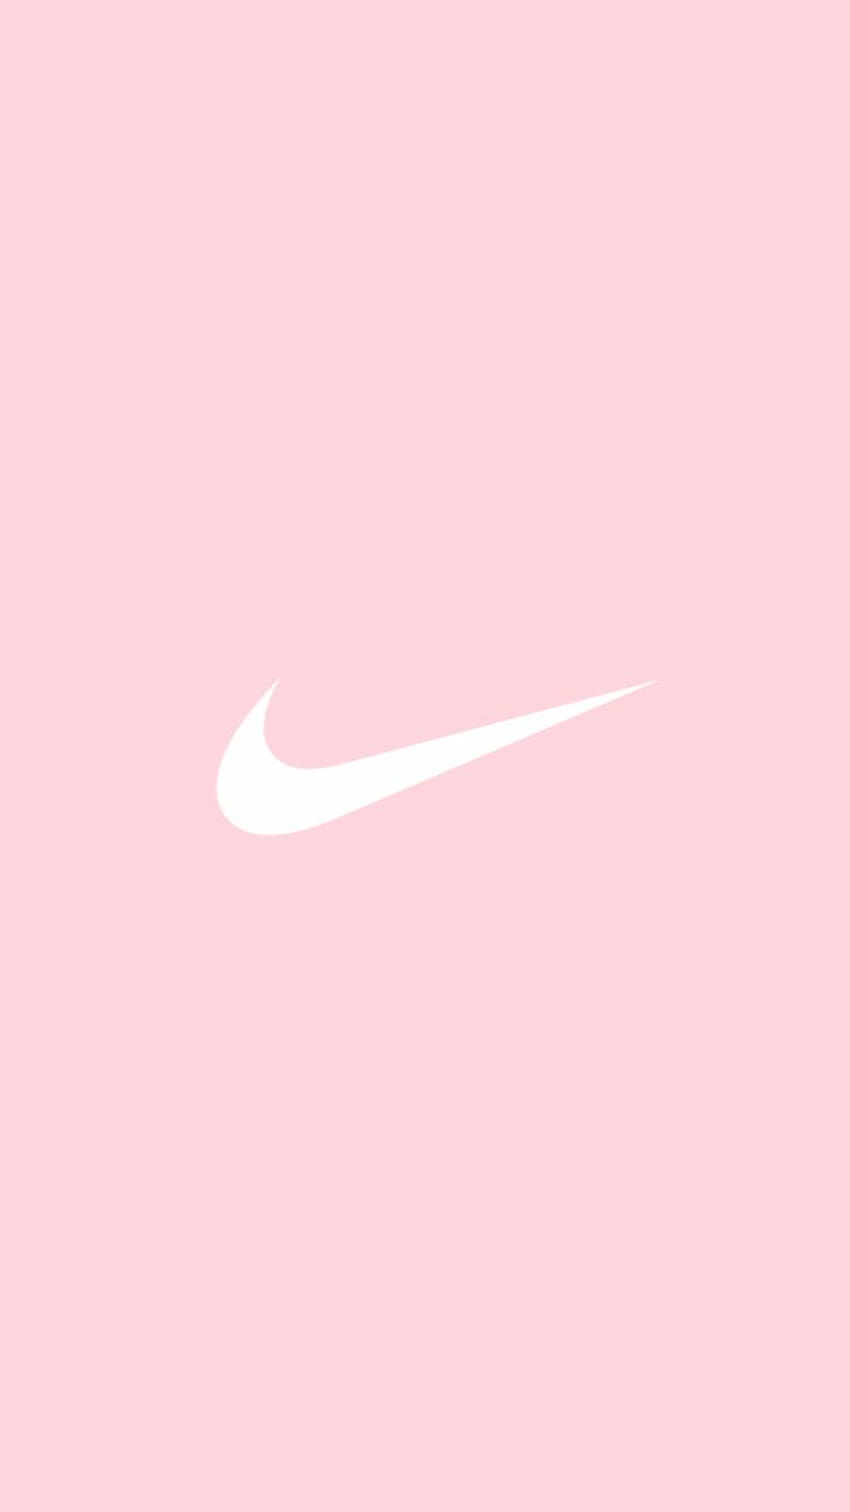 Biểu tượng Nike màu hồng sẽ khiến bạn bị thu hút ngay lập tức với sự tươi trẻ và năng động. Hãy xem hình ảnh liên quan để được trải nghiệm khí chất sáng tạo của biểu tượng.